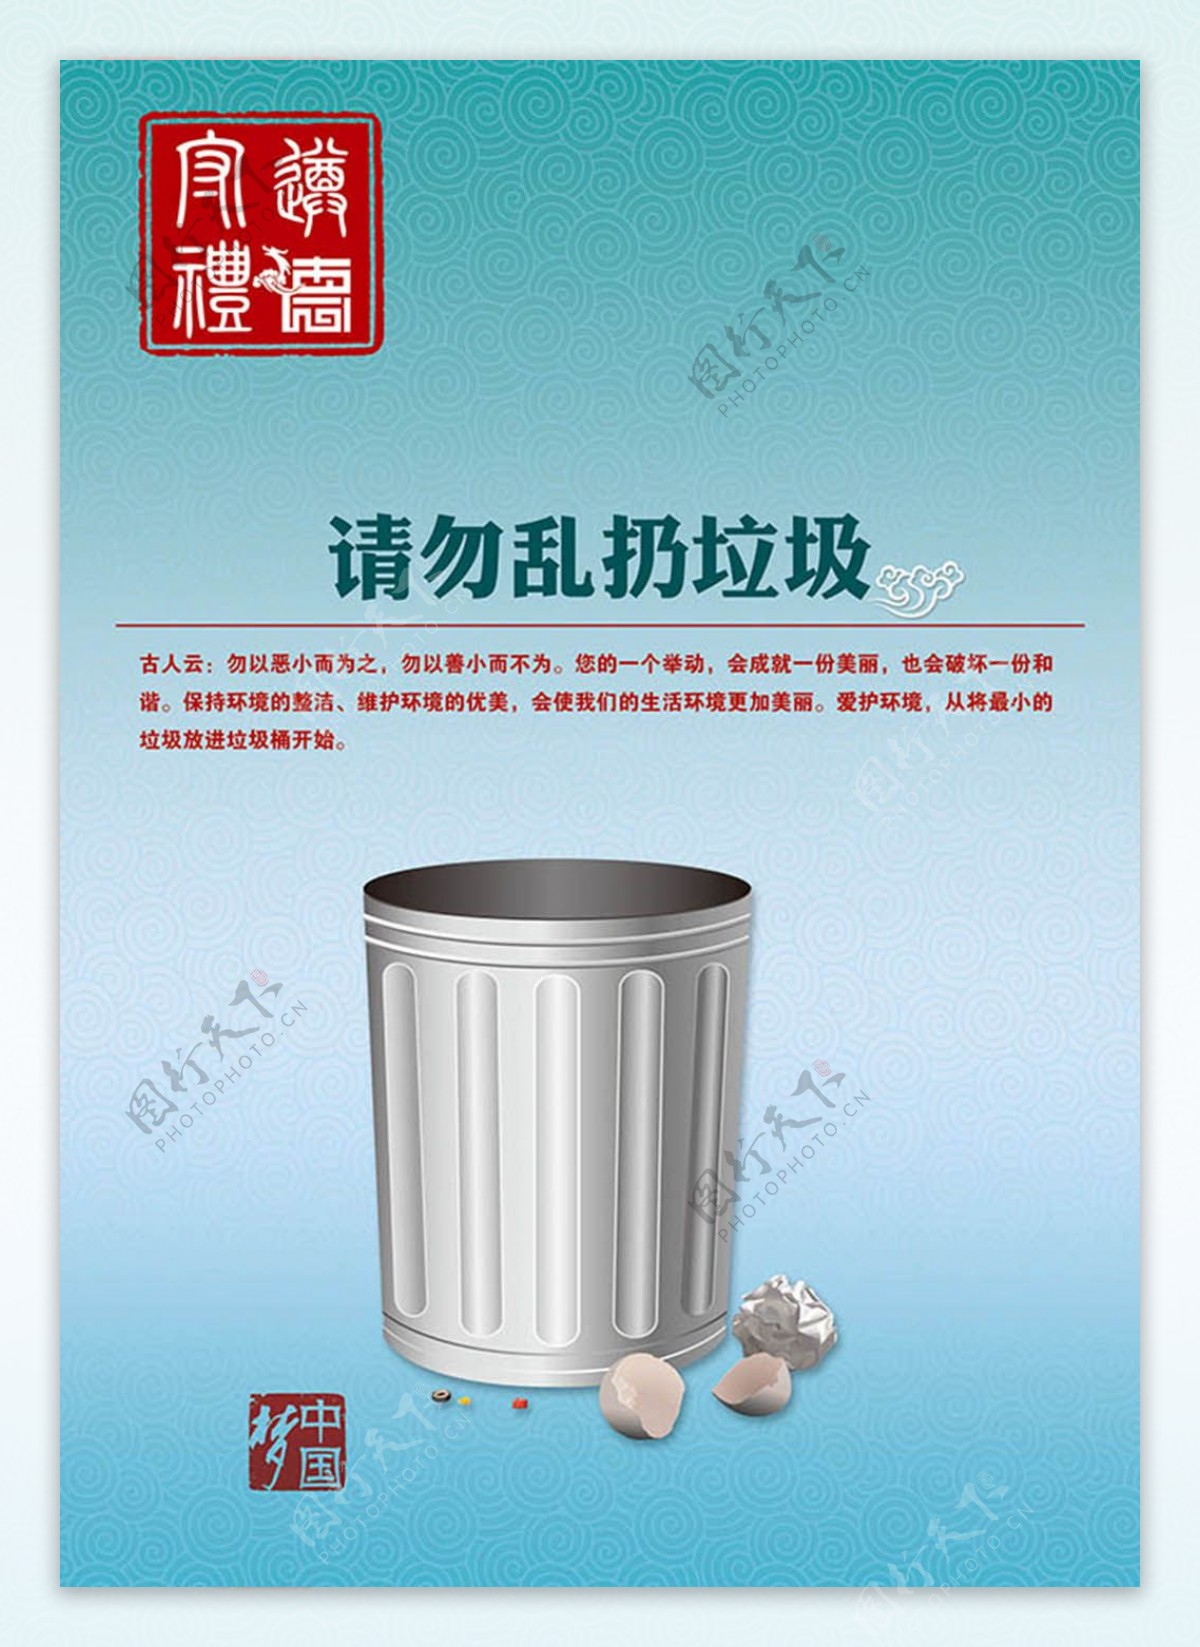 请勿乱扔垃圾中国梦环保公益广告设计